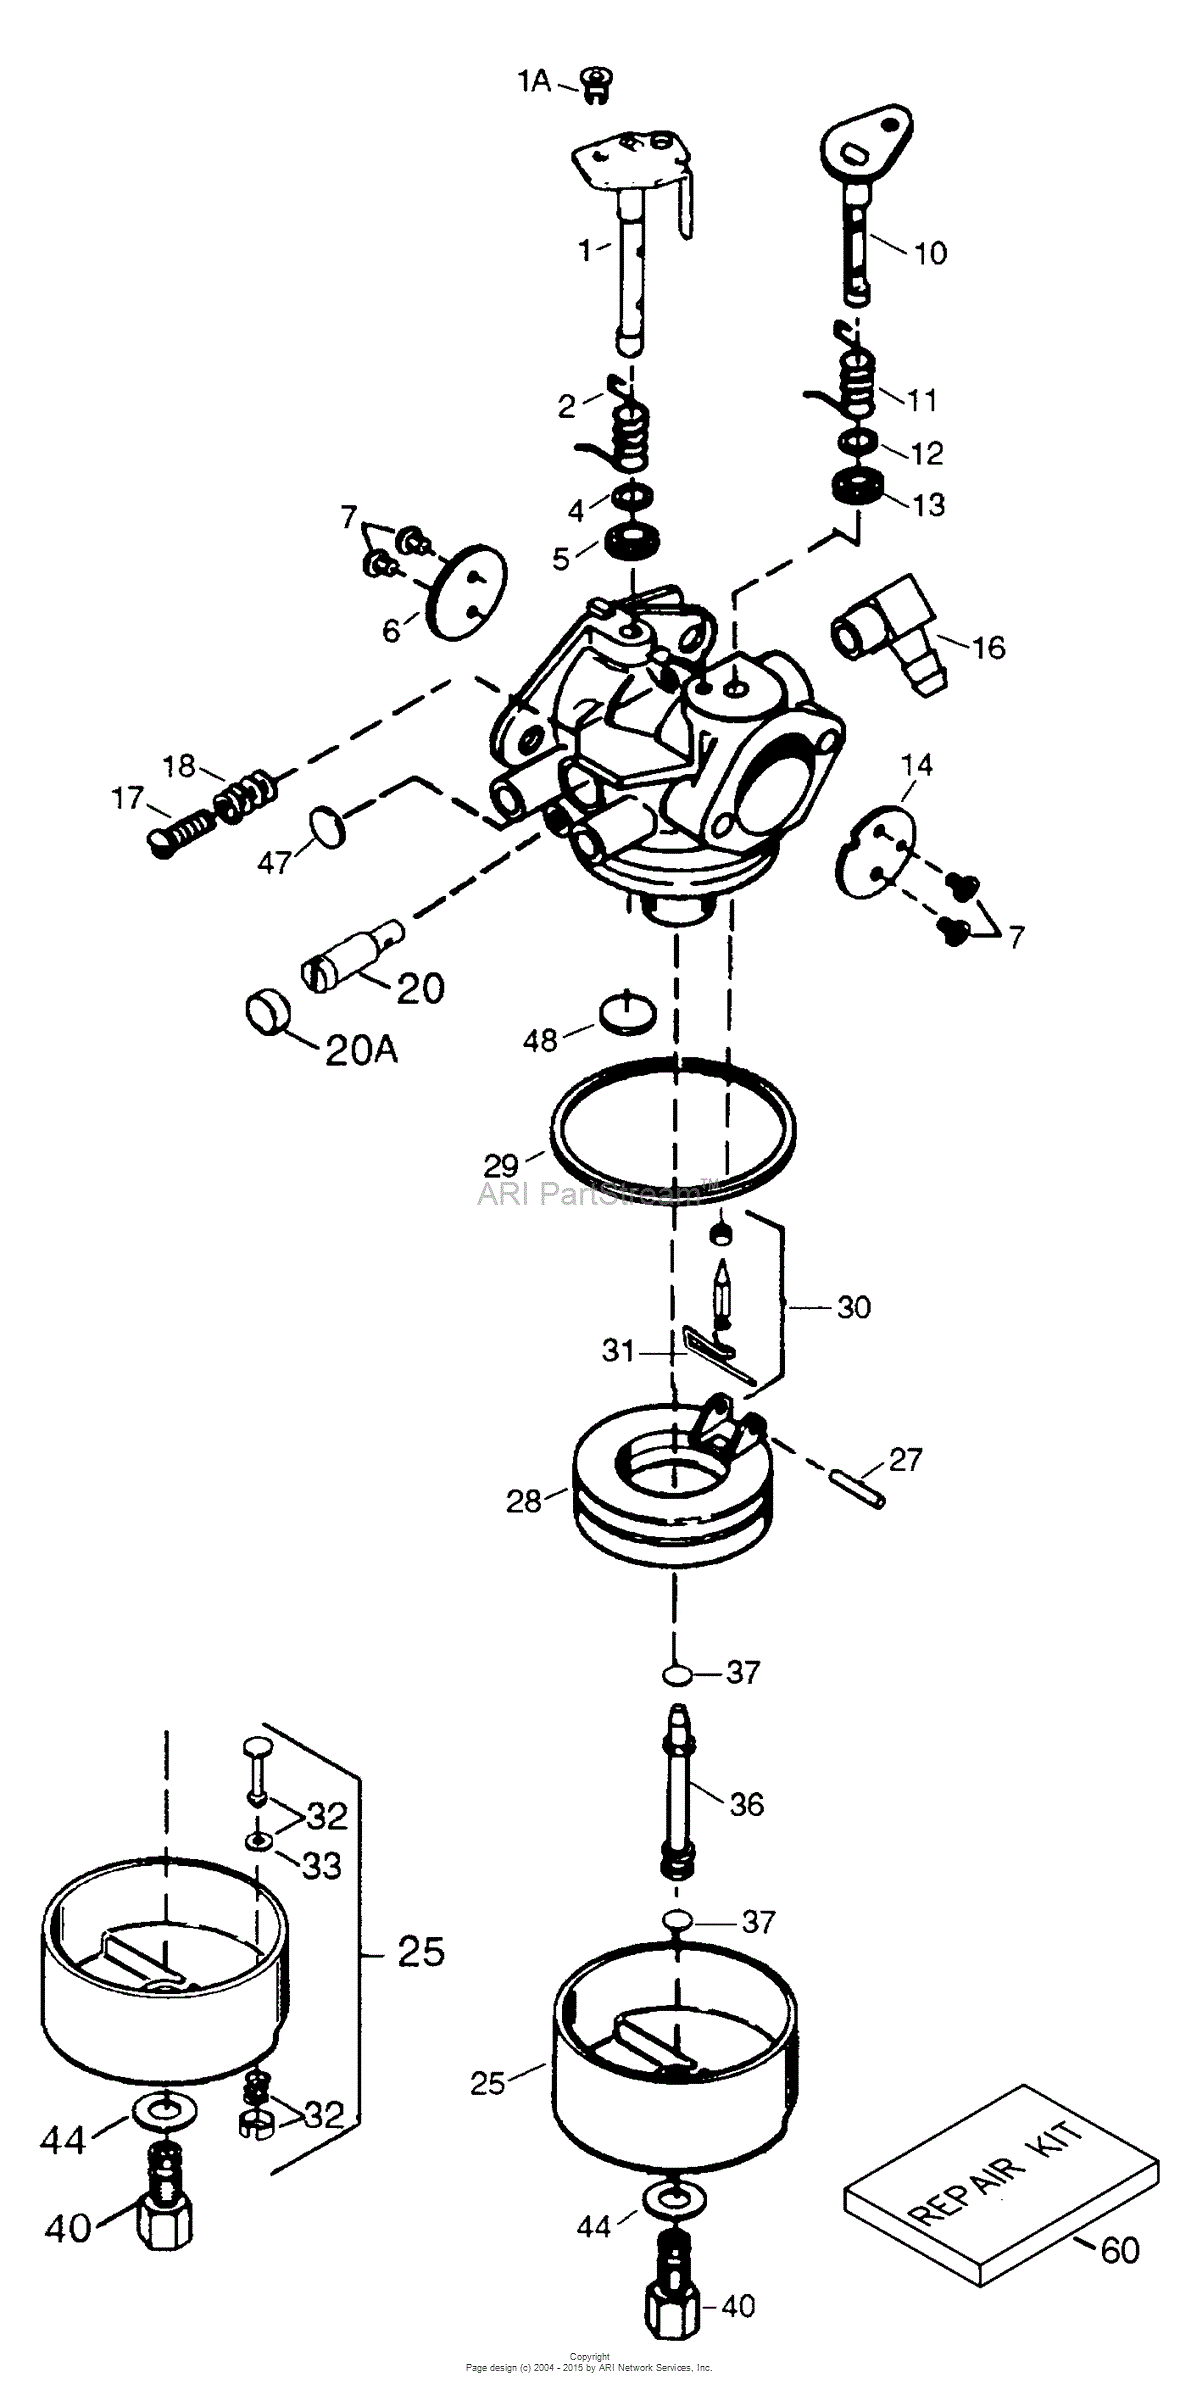 Kohler 20 Hp Carburetor Diagram